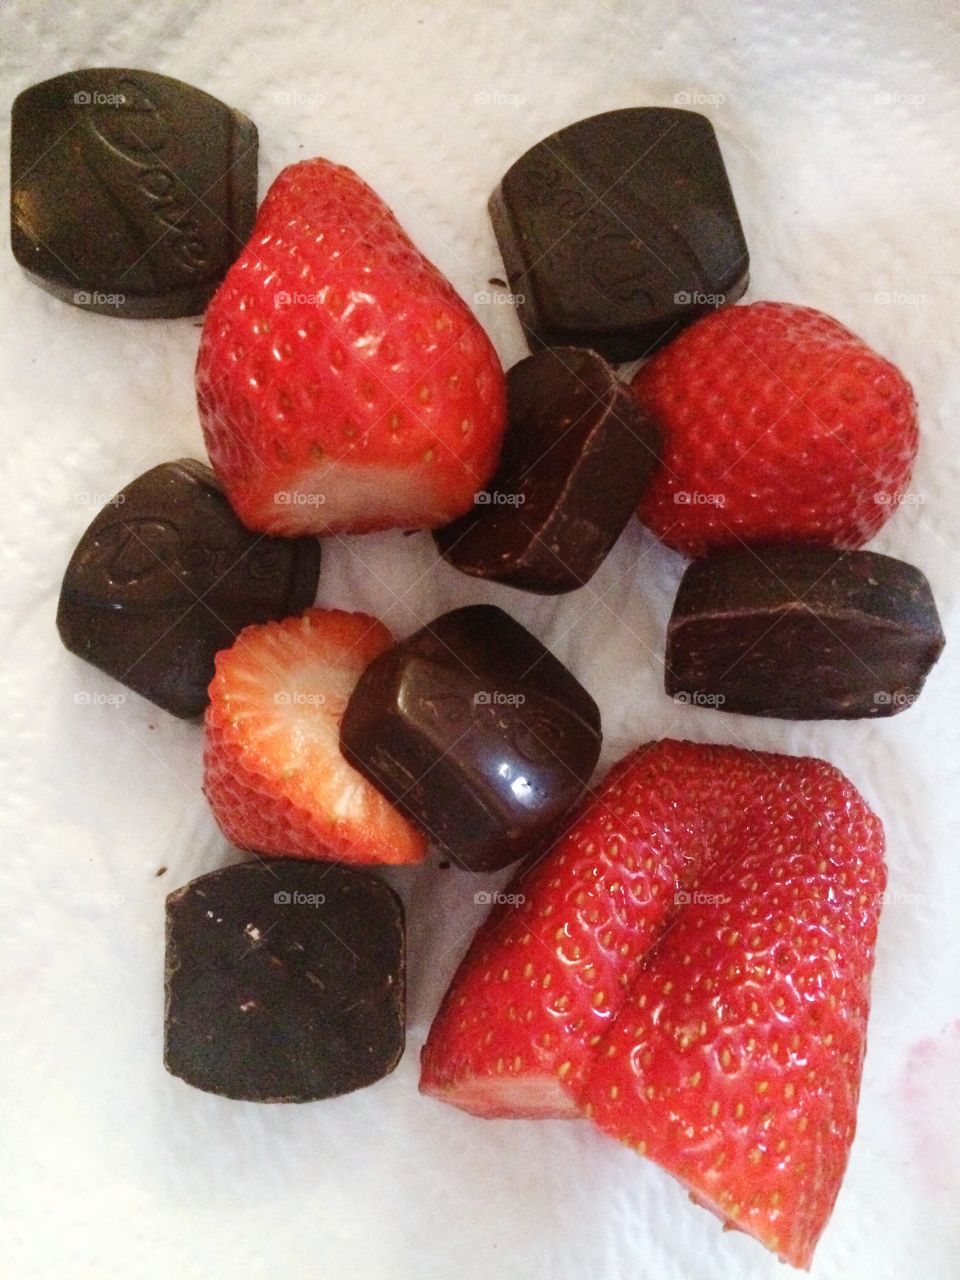 Chocolate and Strawberries 